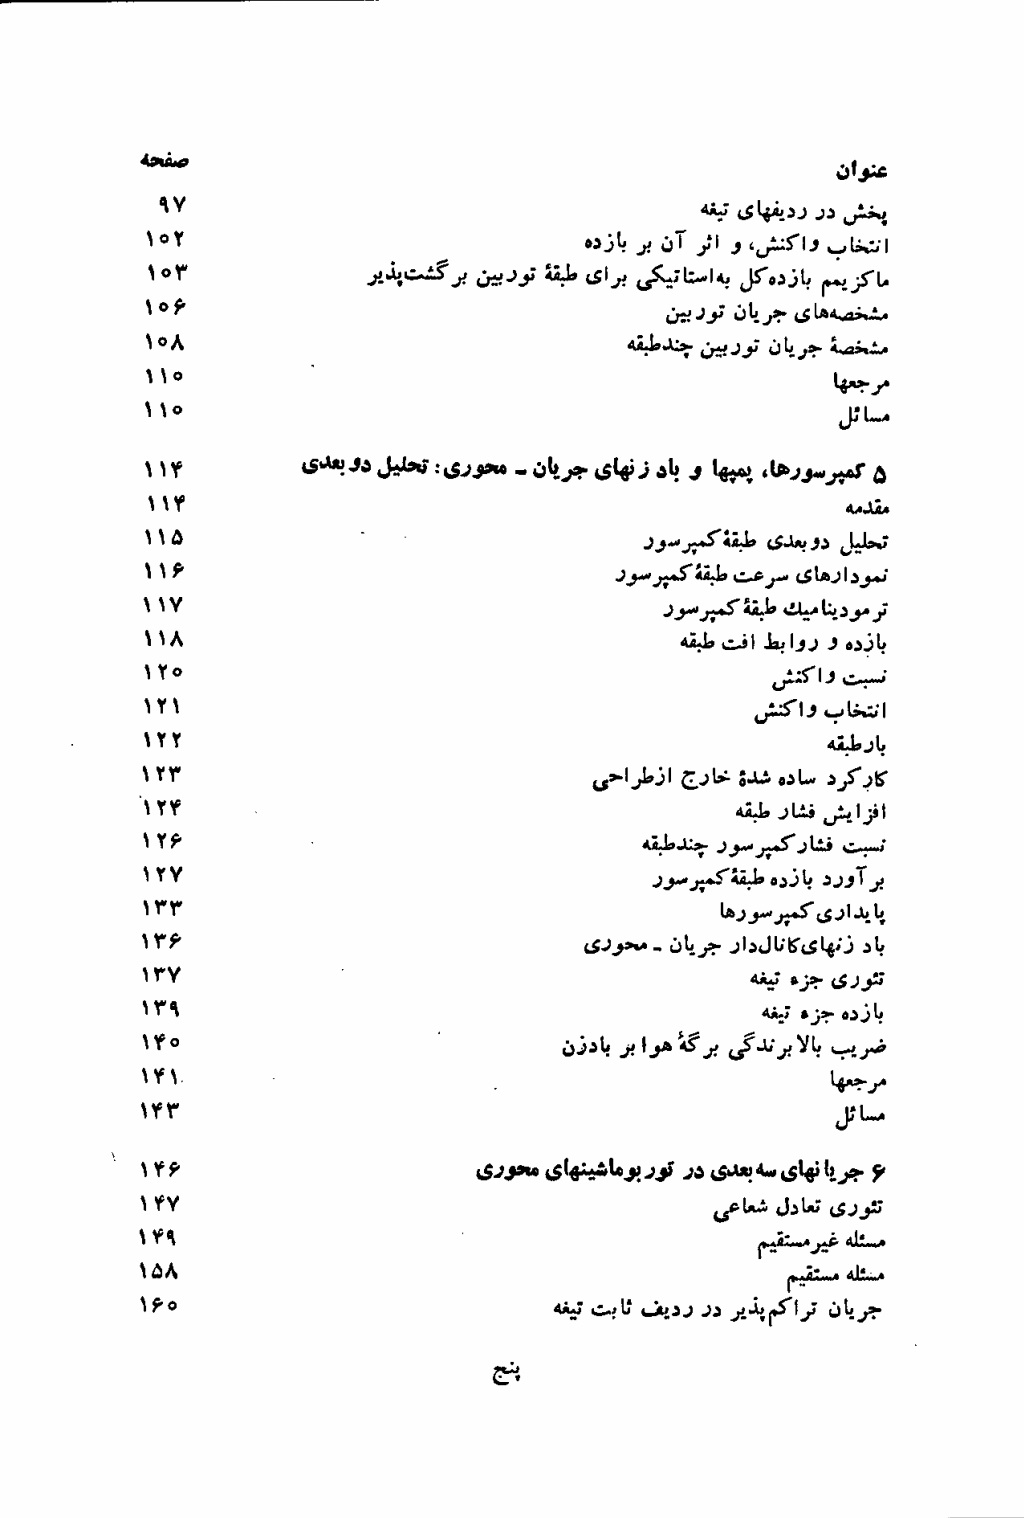 دانلود پی دی اف کتاب توربو ماشین از دیکسون - 269 صفحه PDF